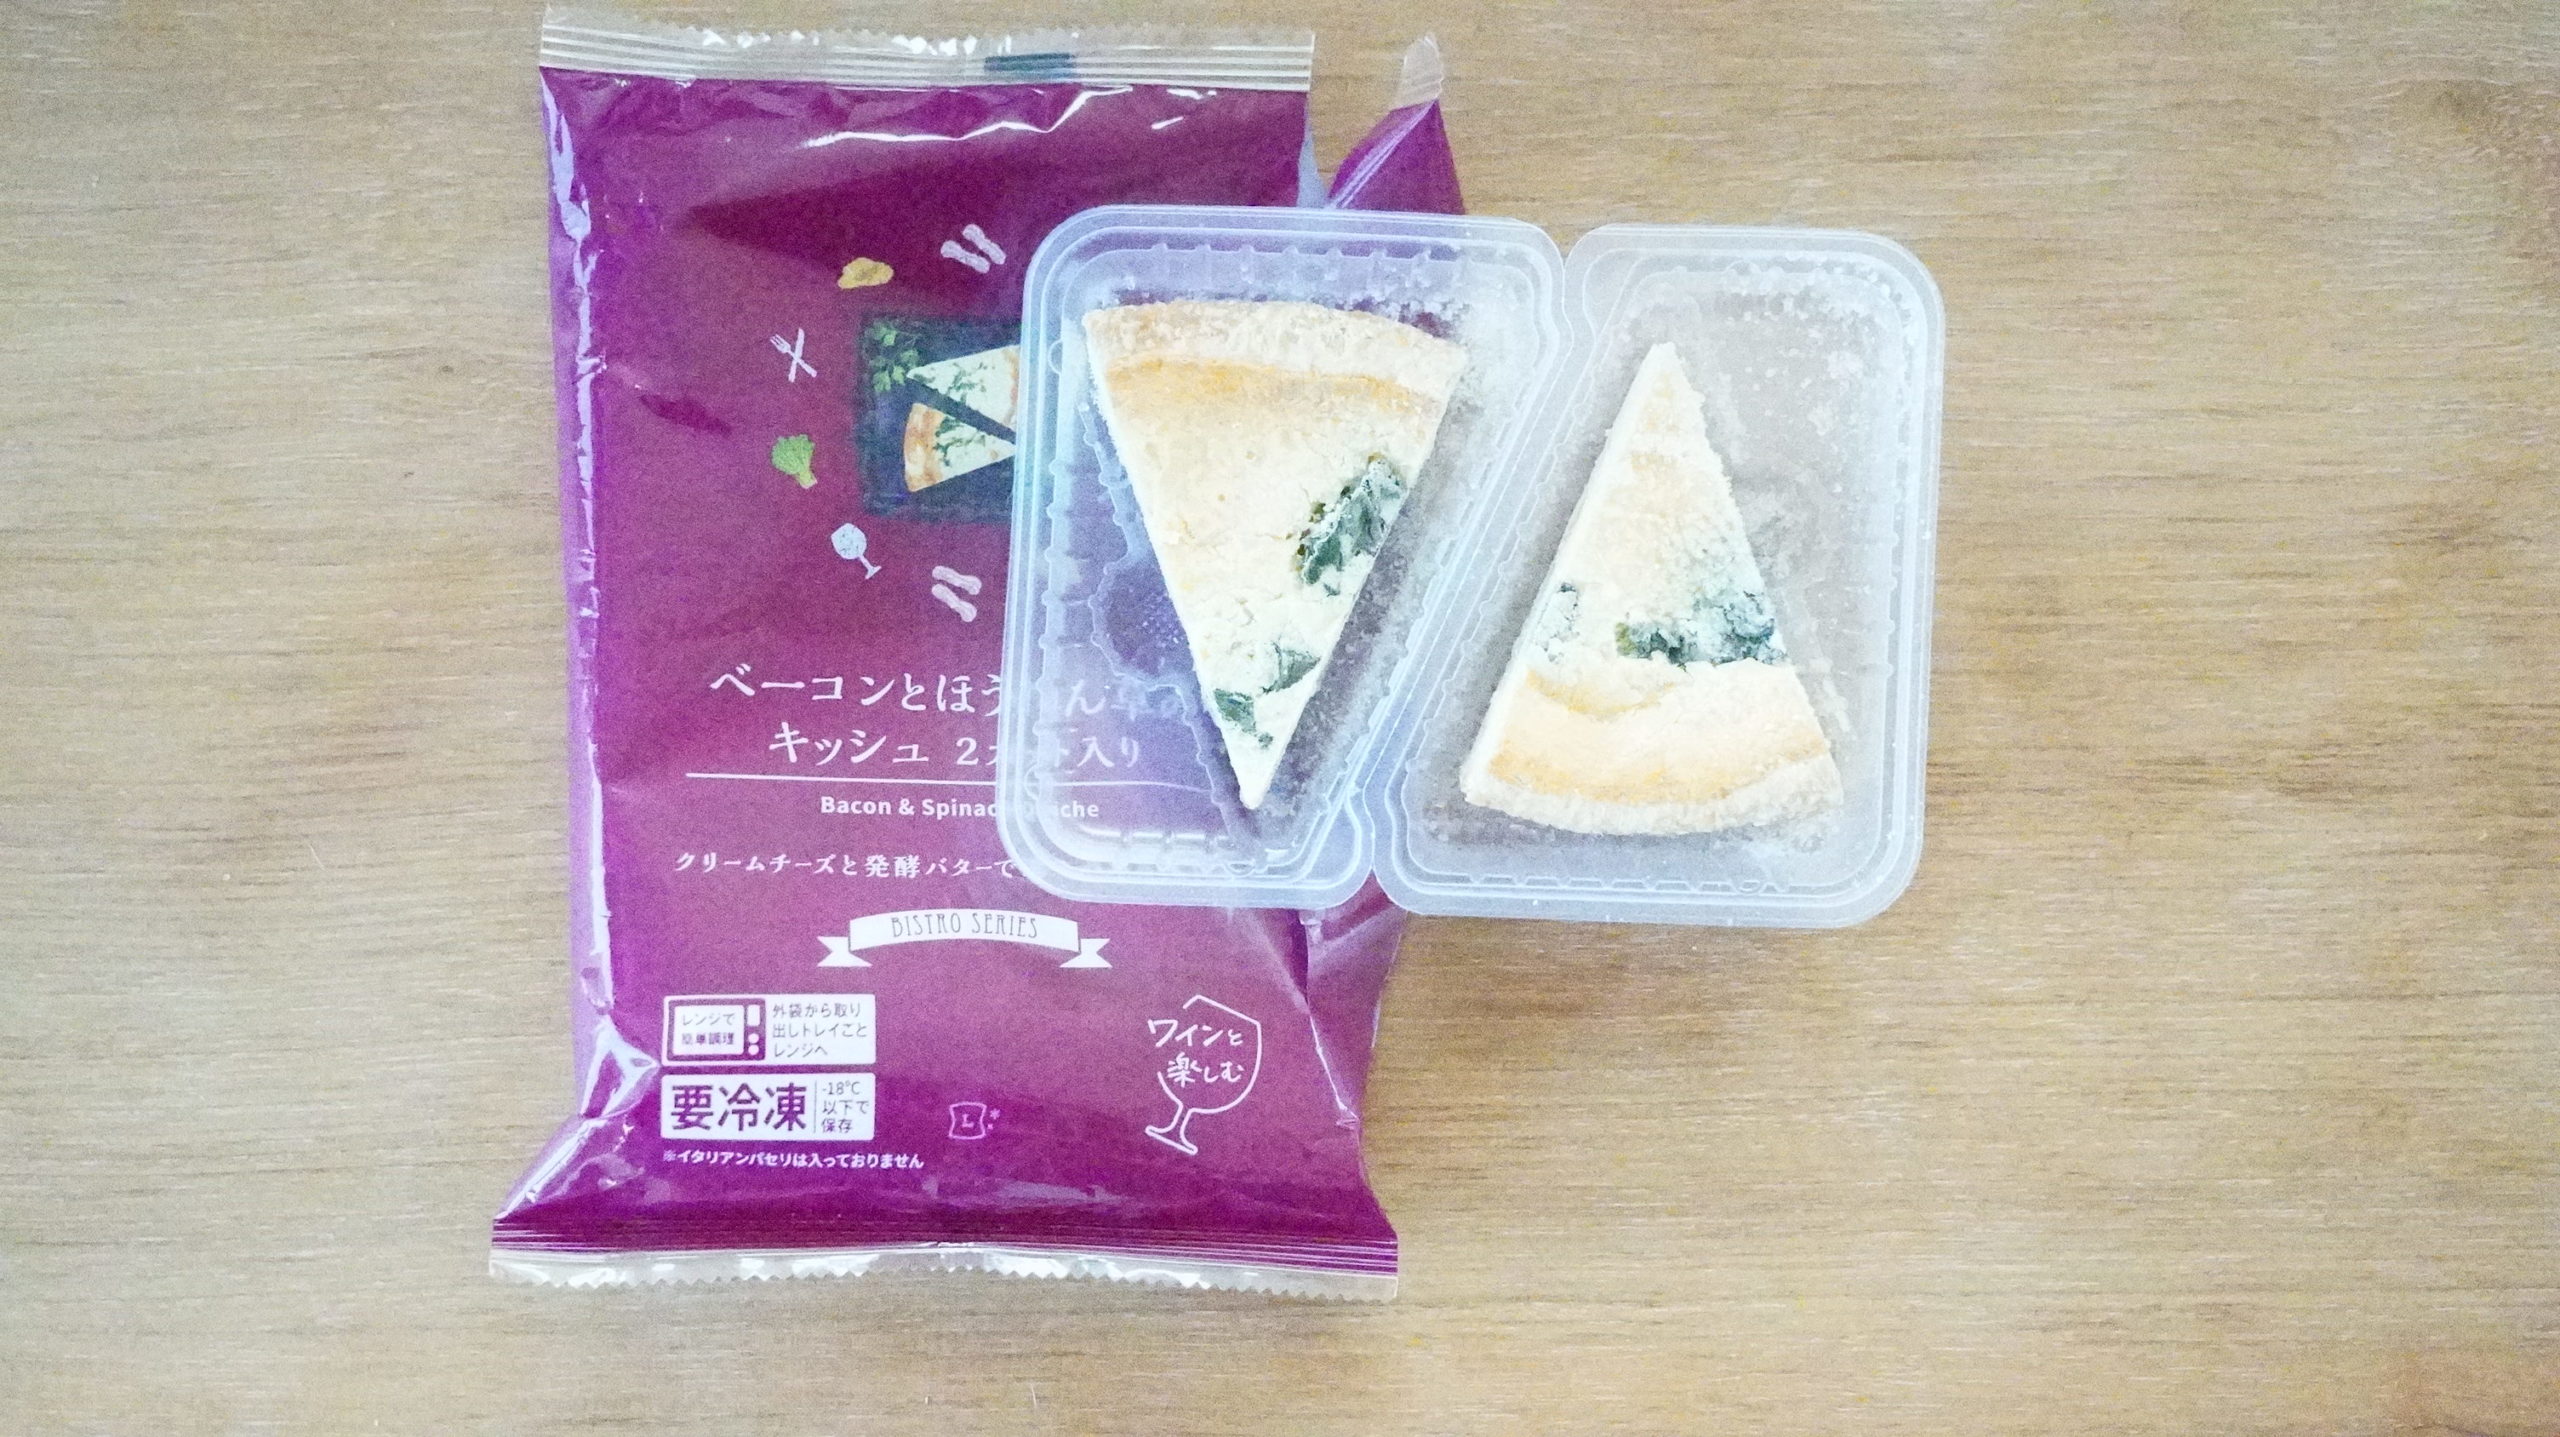 ローソンの冷凍食品「ベーコンとほうれん草のキッシュ」のパッケージと中身の写真